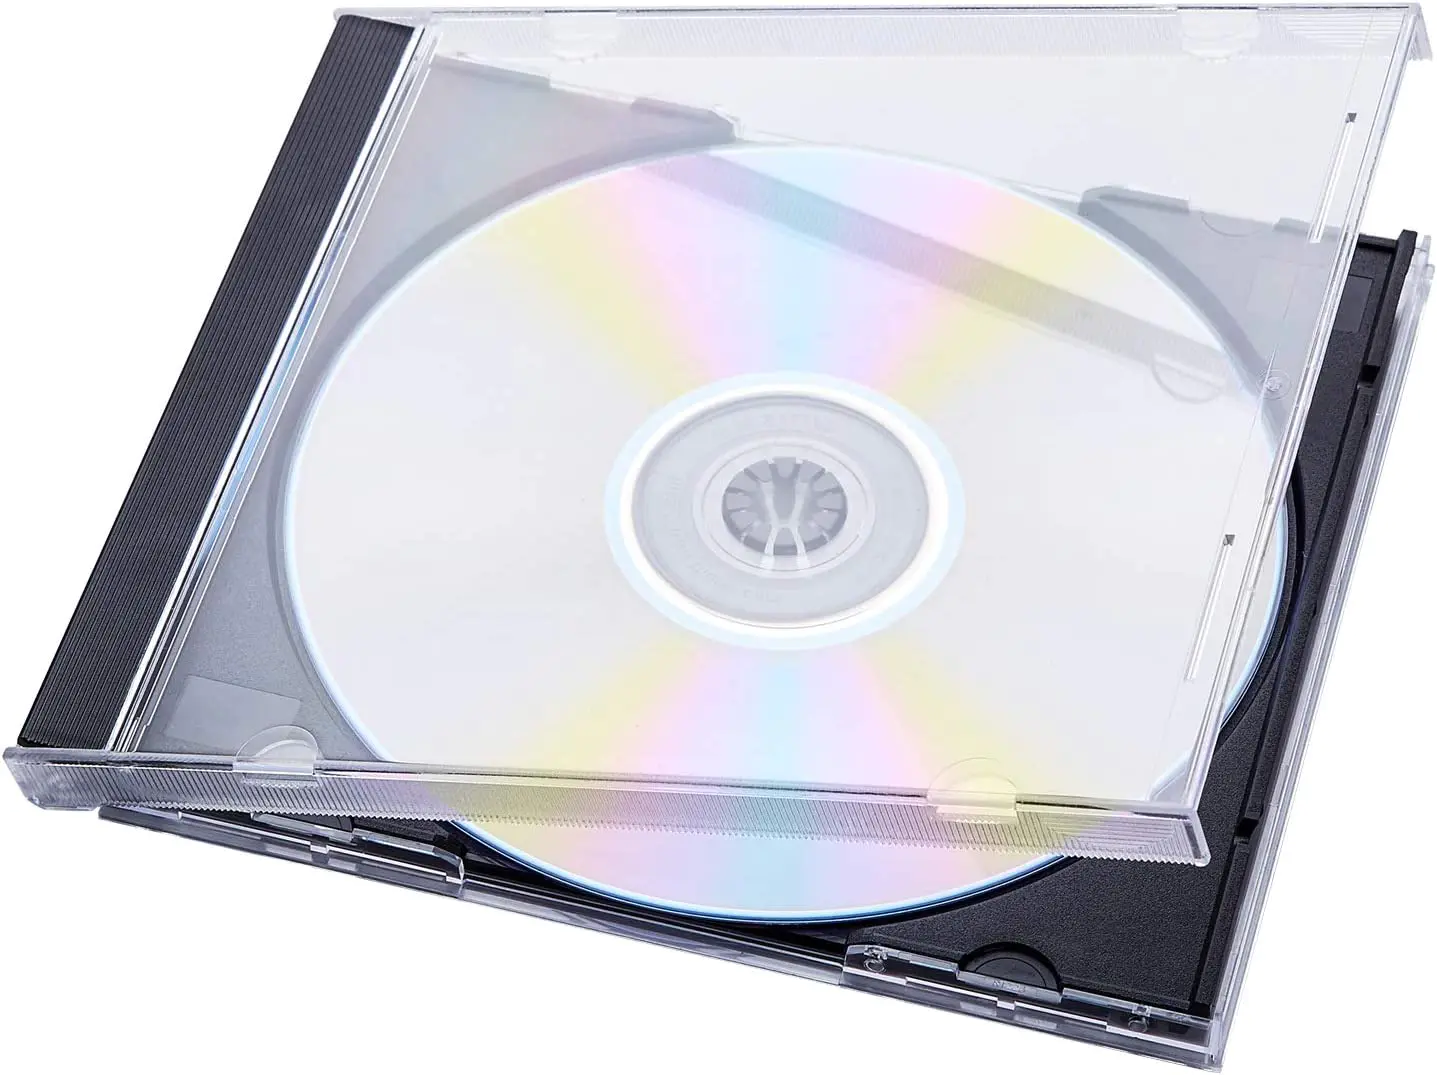 Sarung Permata CD Jelas Tunggal Standard dengan Dulang Hitam Yang Dipasang